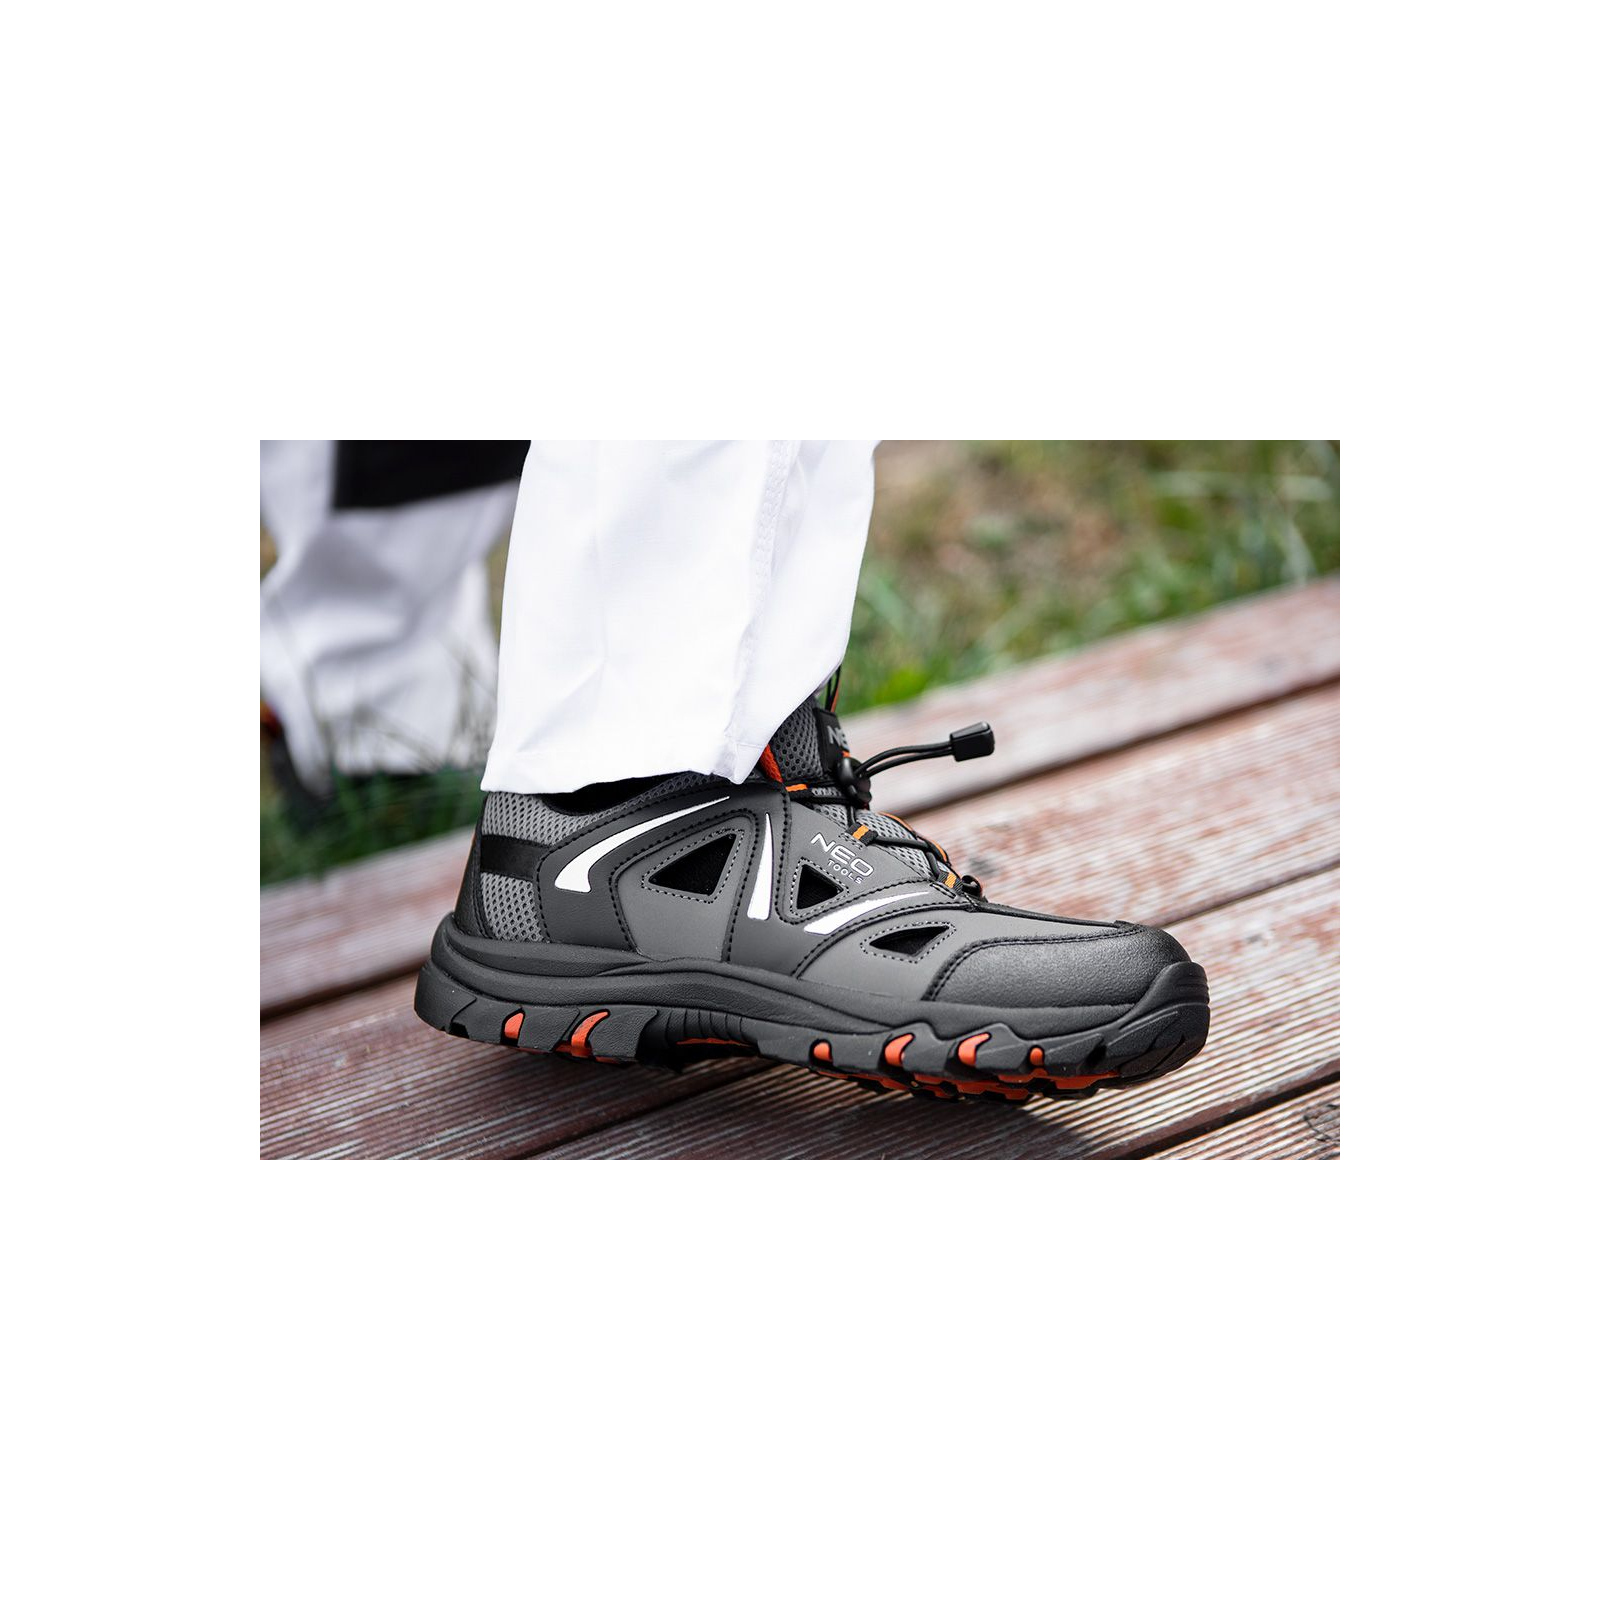 Ботинки рабочие Neo Tools кроссовки дышащие, подошва EVA, класс защиты OB, SRA, р.46 (82-727) изображение 3